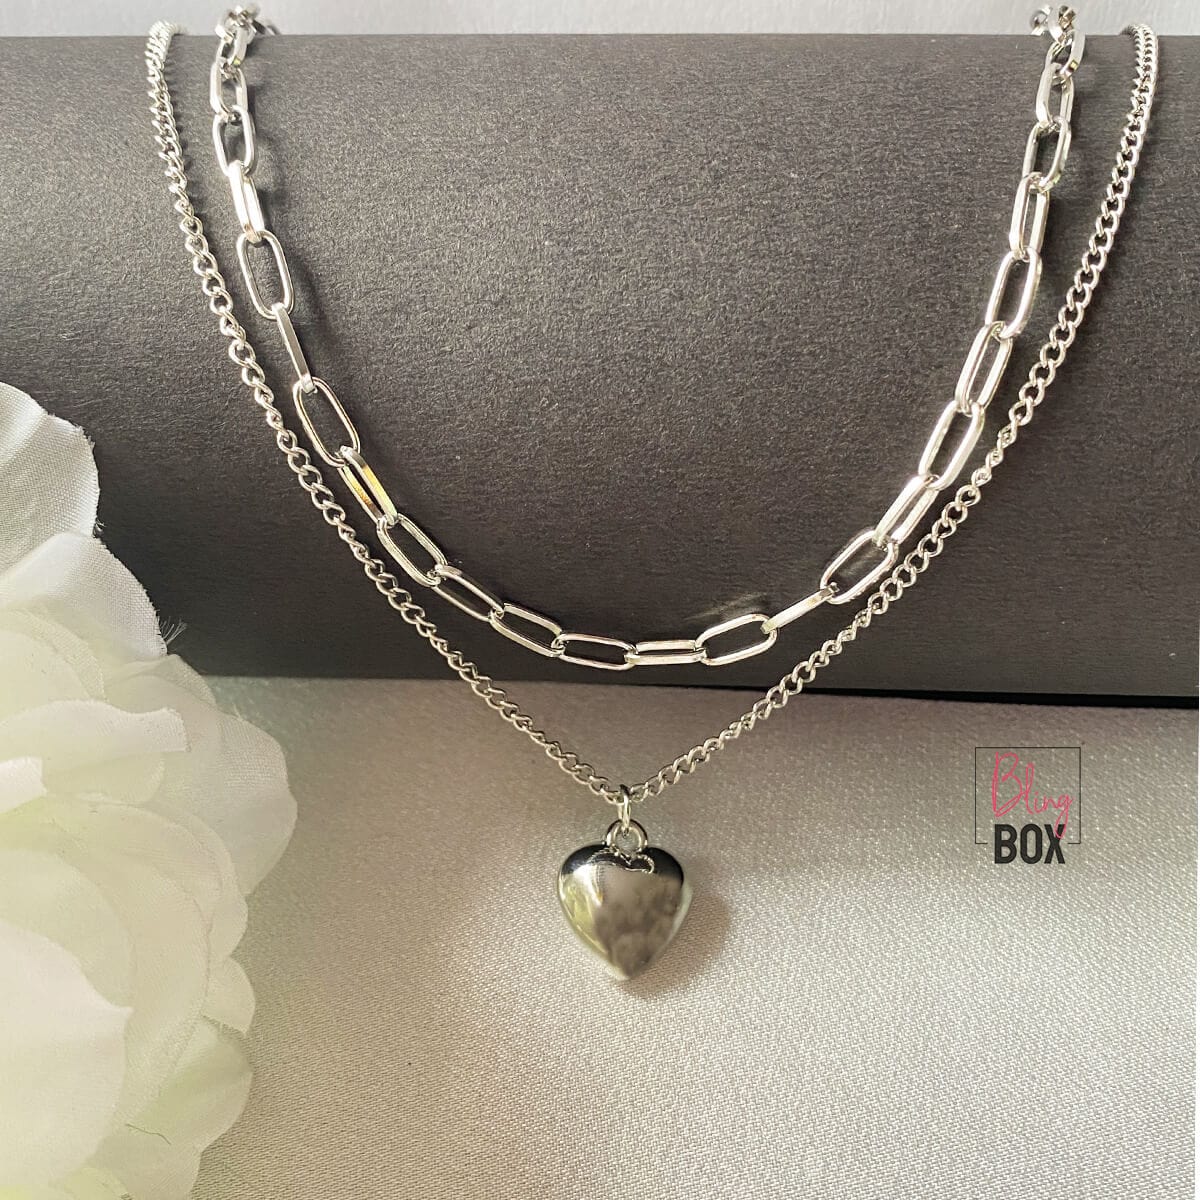 Buy Tiny Heart Locket, Sterling Silver Locket Necklace, Tiny Photo Locket, Dainty  Locket Pendant, Gift for Daughter, Two Photo Locket Pendant Online in India  - Etsy